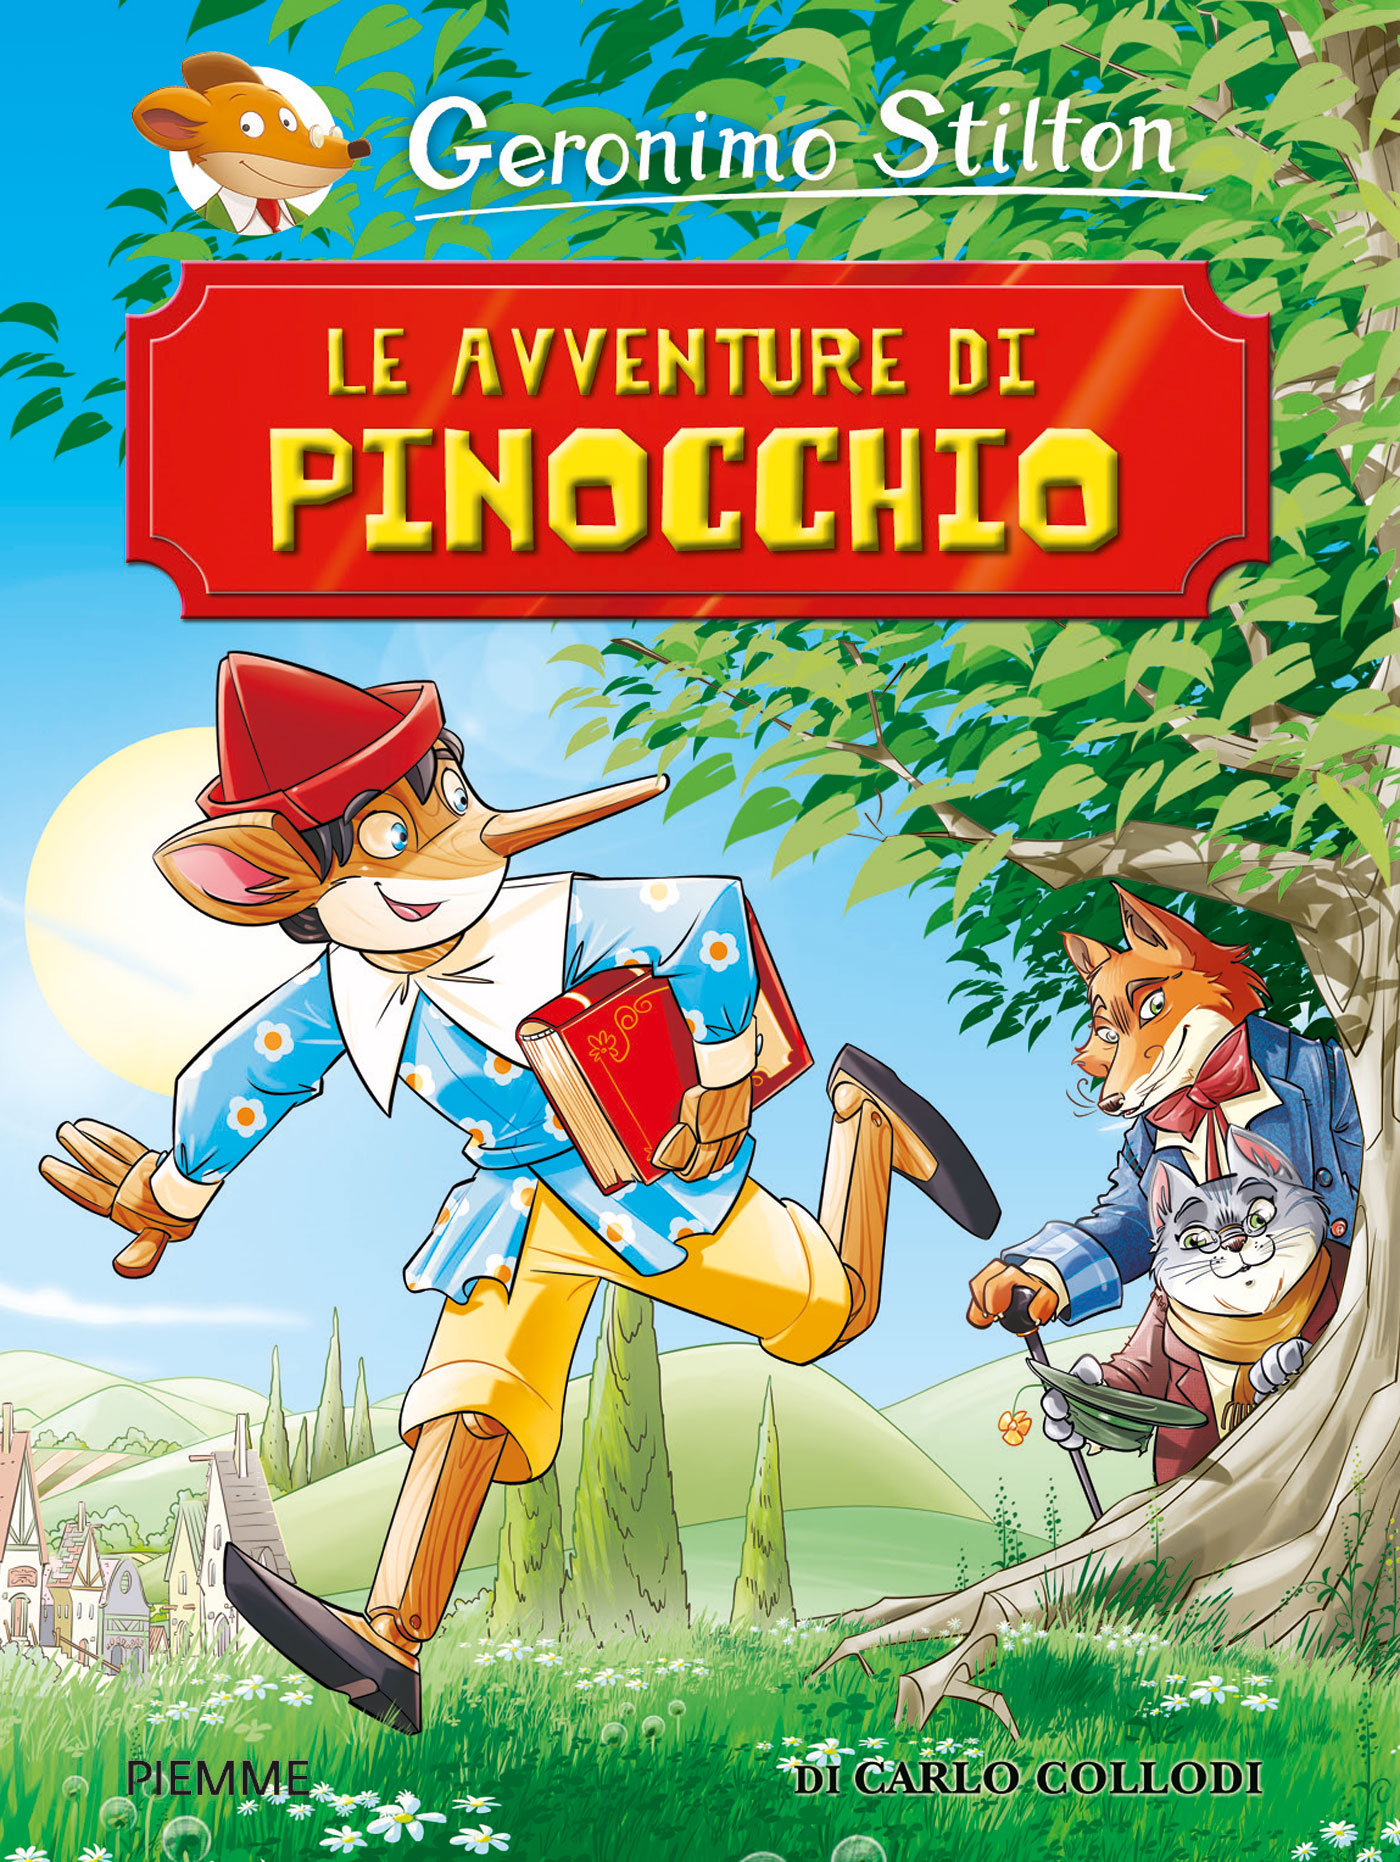 Le avventure di Pinocchio - LeggendoLeggendo